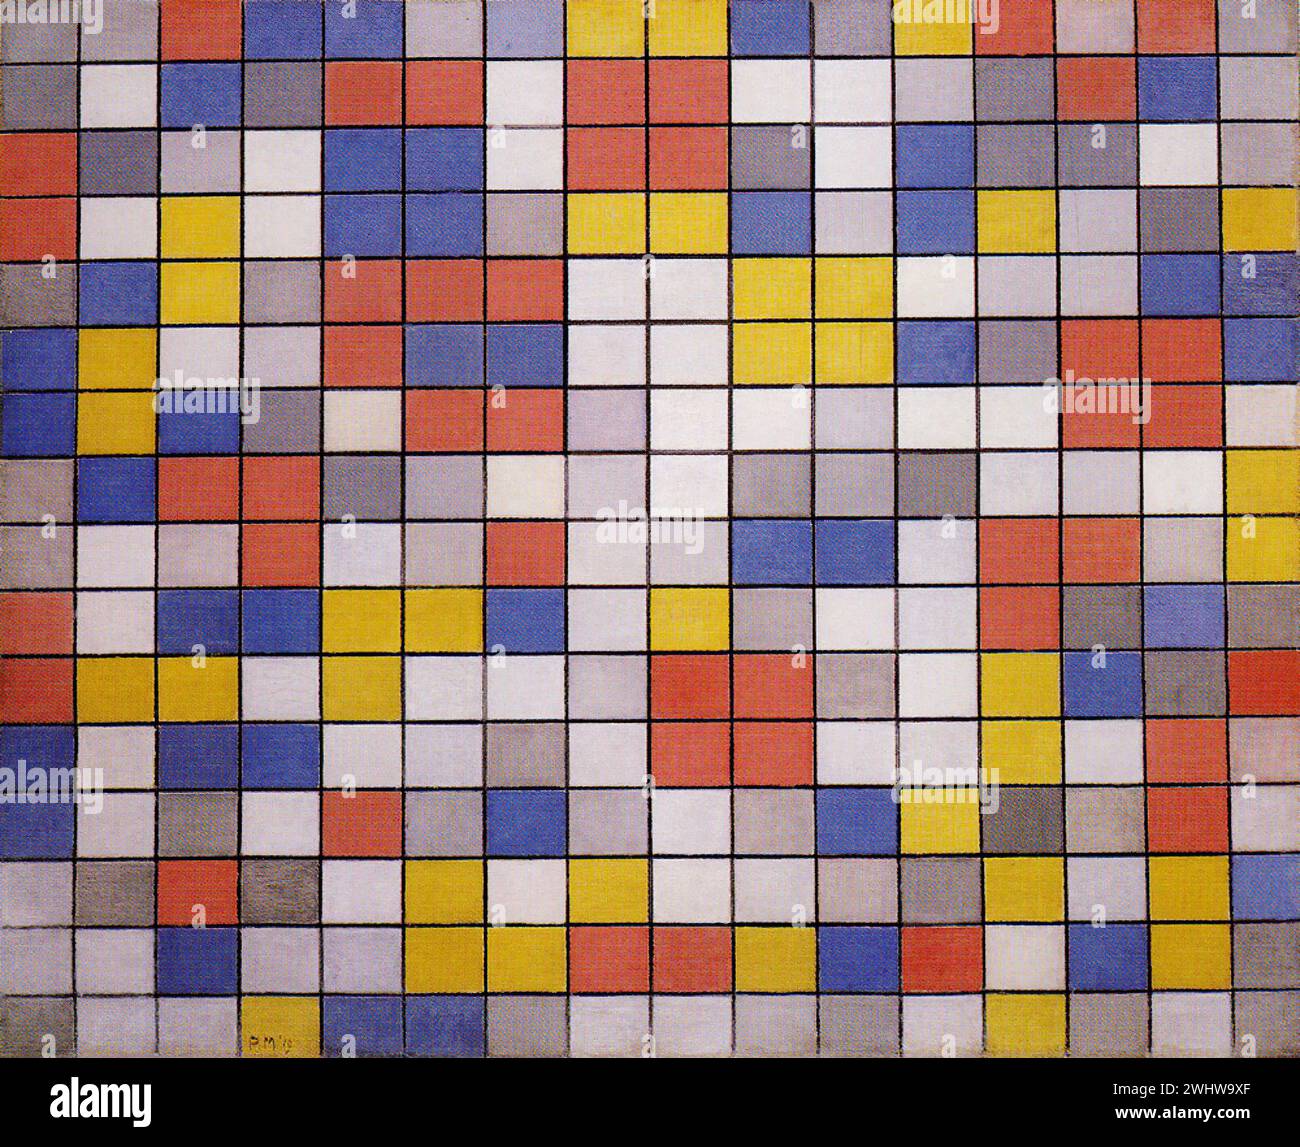 Piet Mondrian - Composition en damier avec des couleurs claires Stock Photo